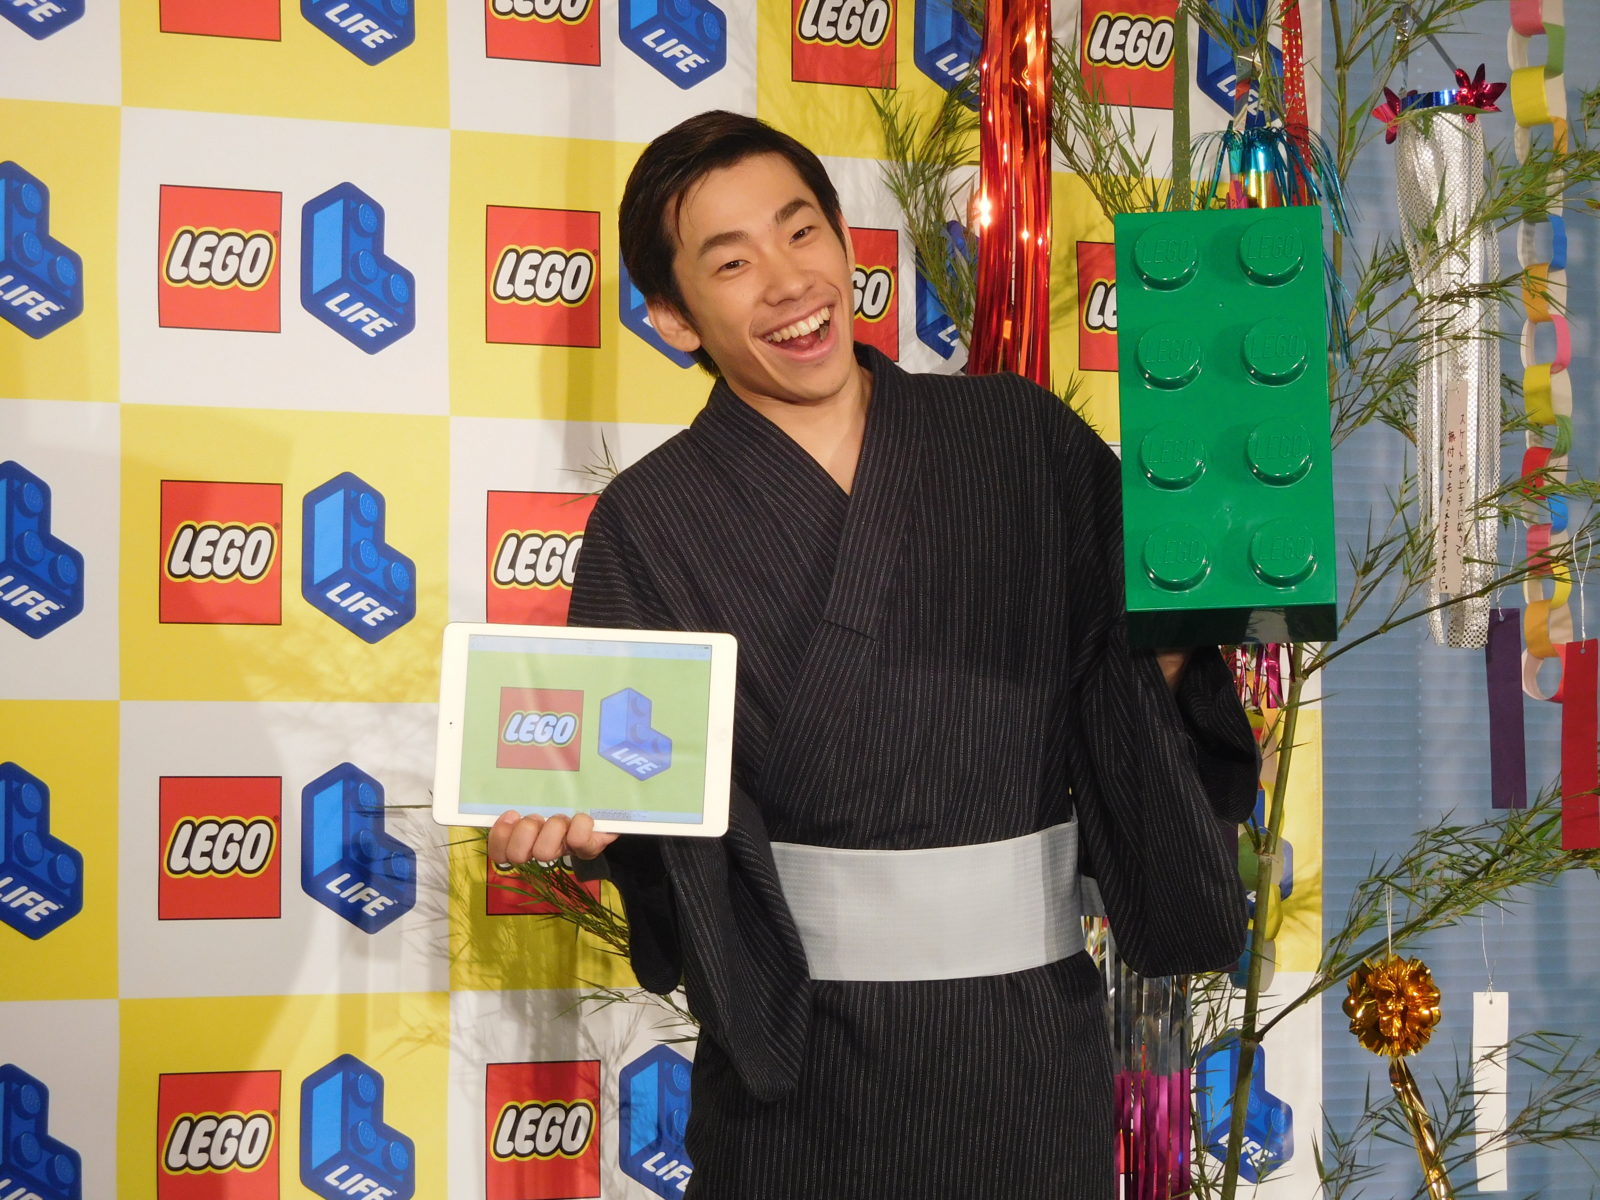 織田信成がレゴのSNSアプリに父親太鼓判!?「レゴはワクワクやクリエイティビティを育んでくれる」サムネイル画像!